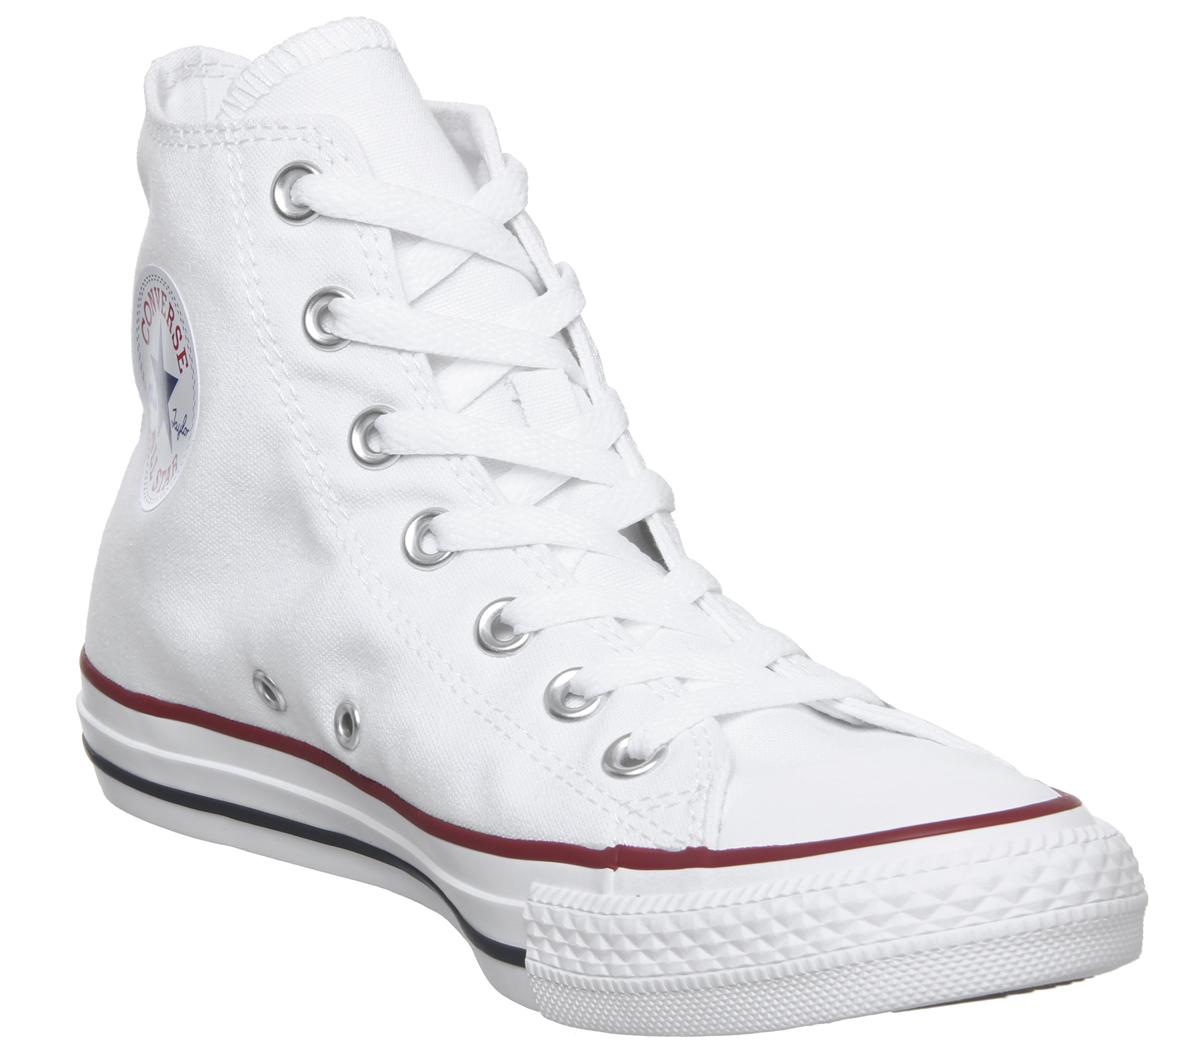 white converse size 4 junior